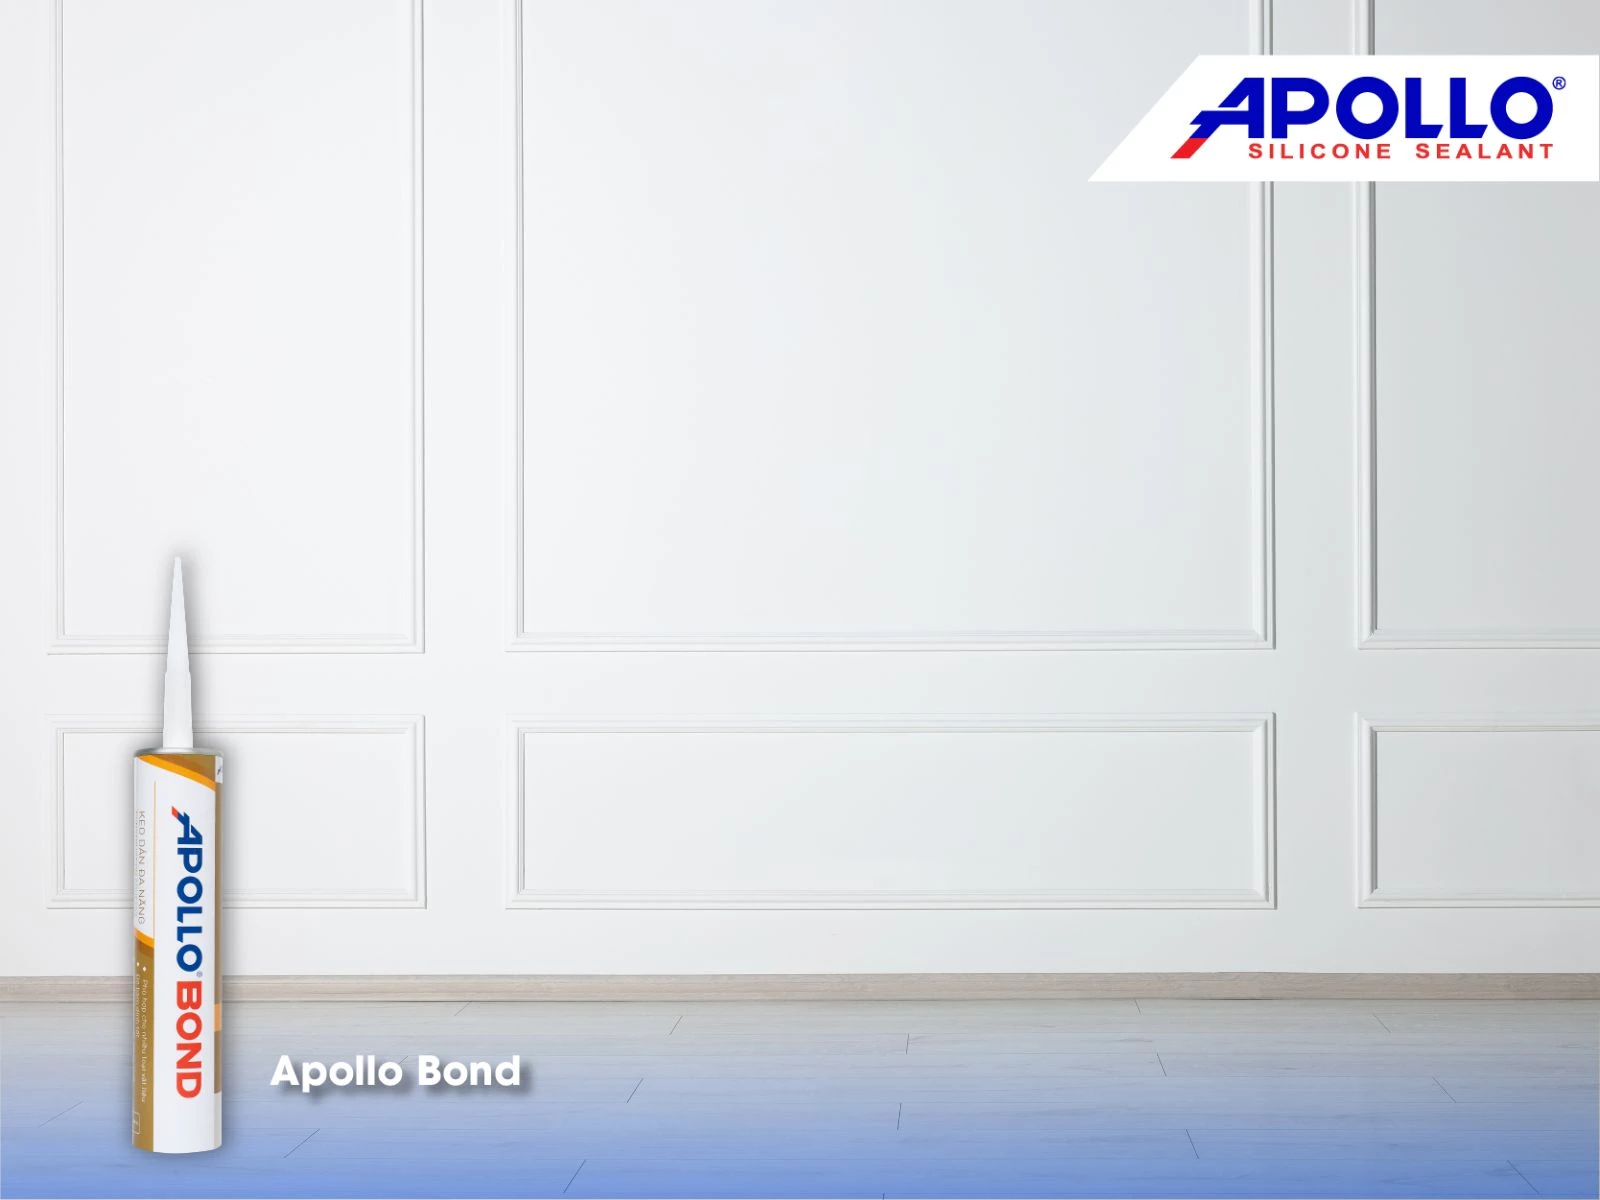 Apollo Bond không chứa dung môi độc hại, đảm bảo an toàn cho người sử dụng và thân thiện với môi trường